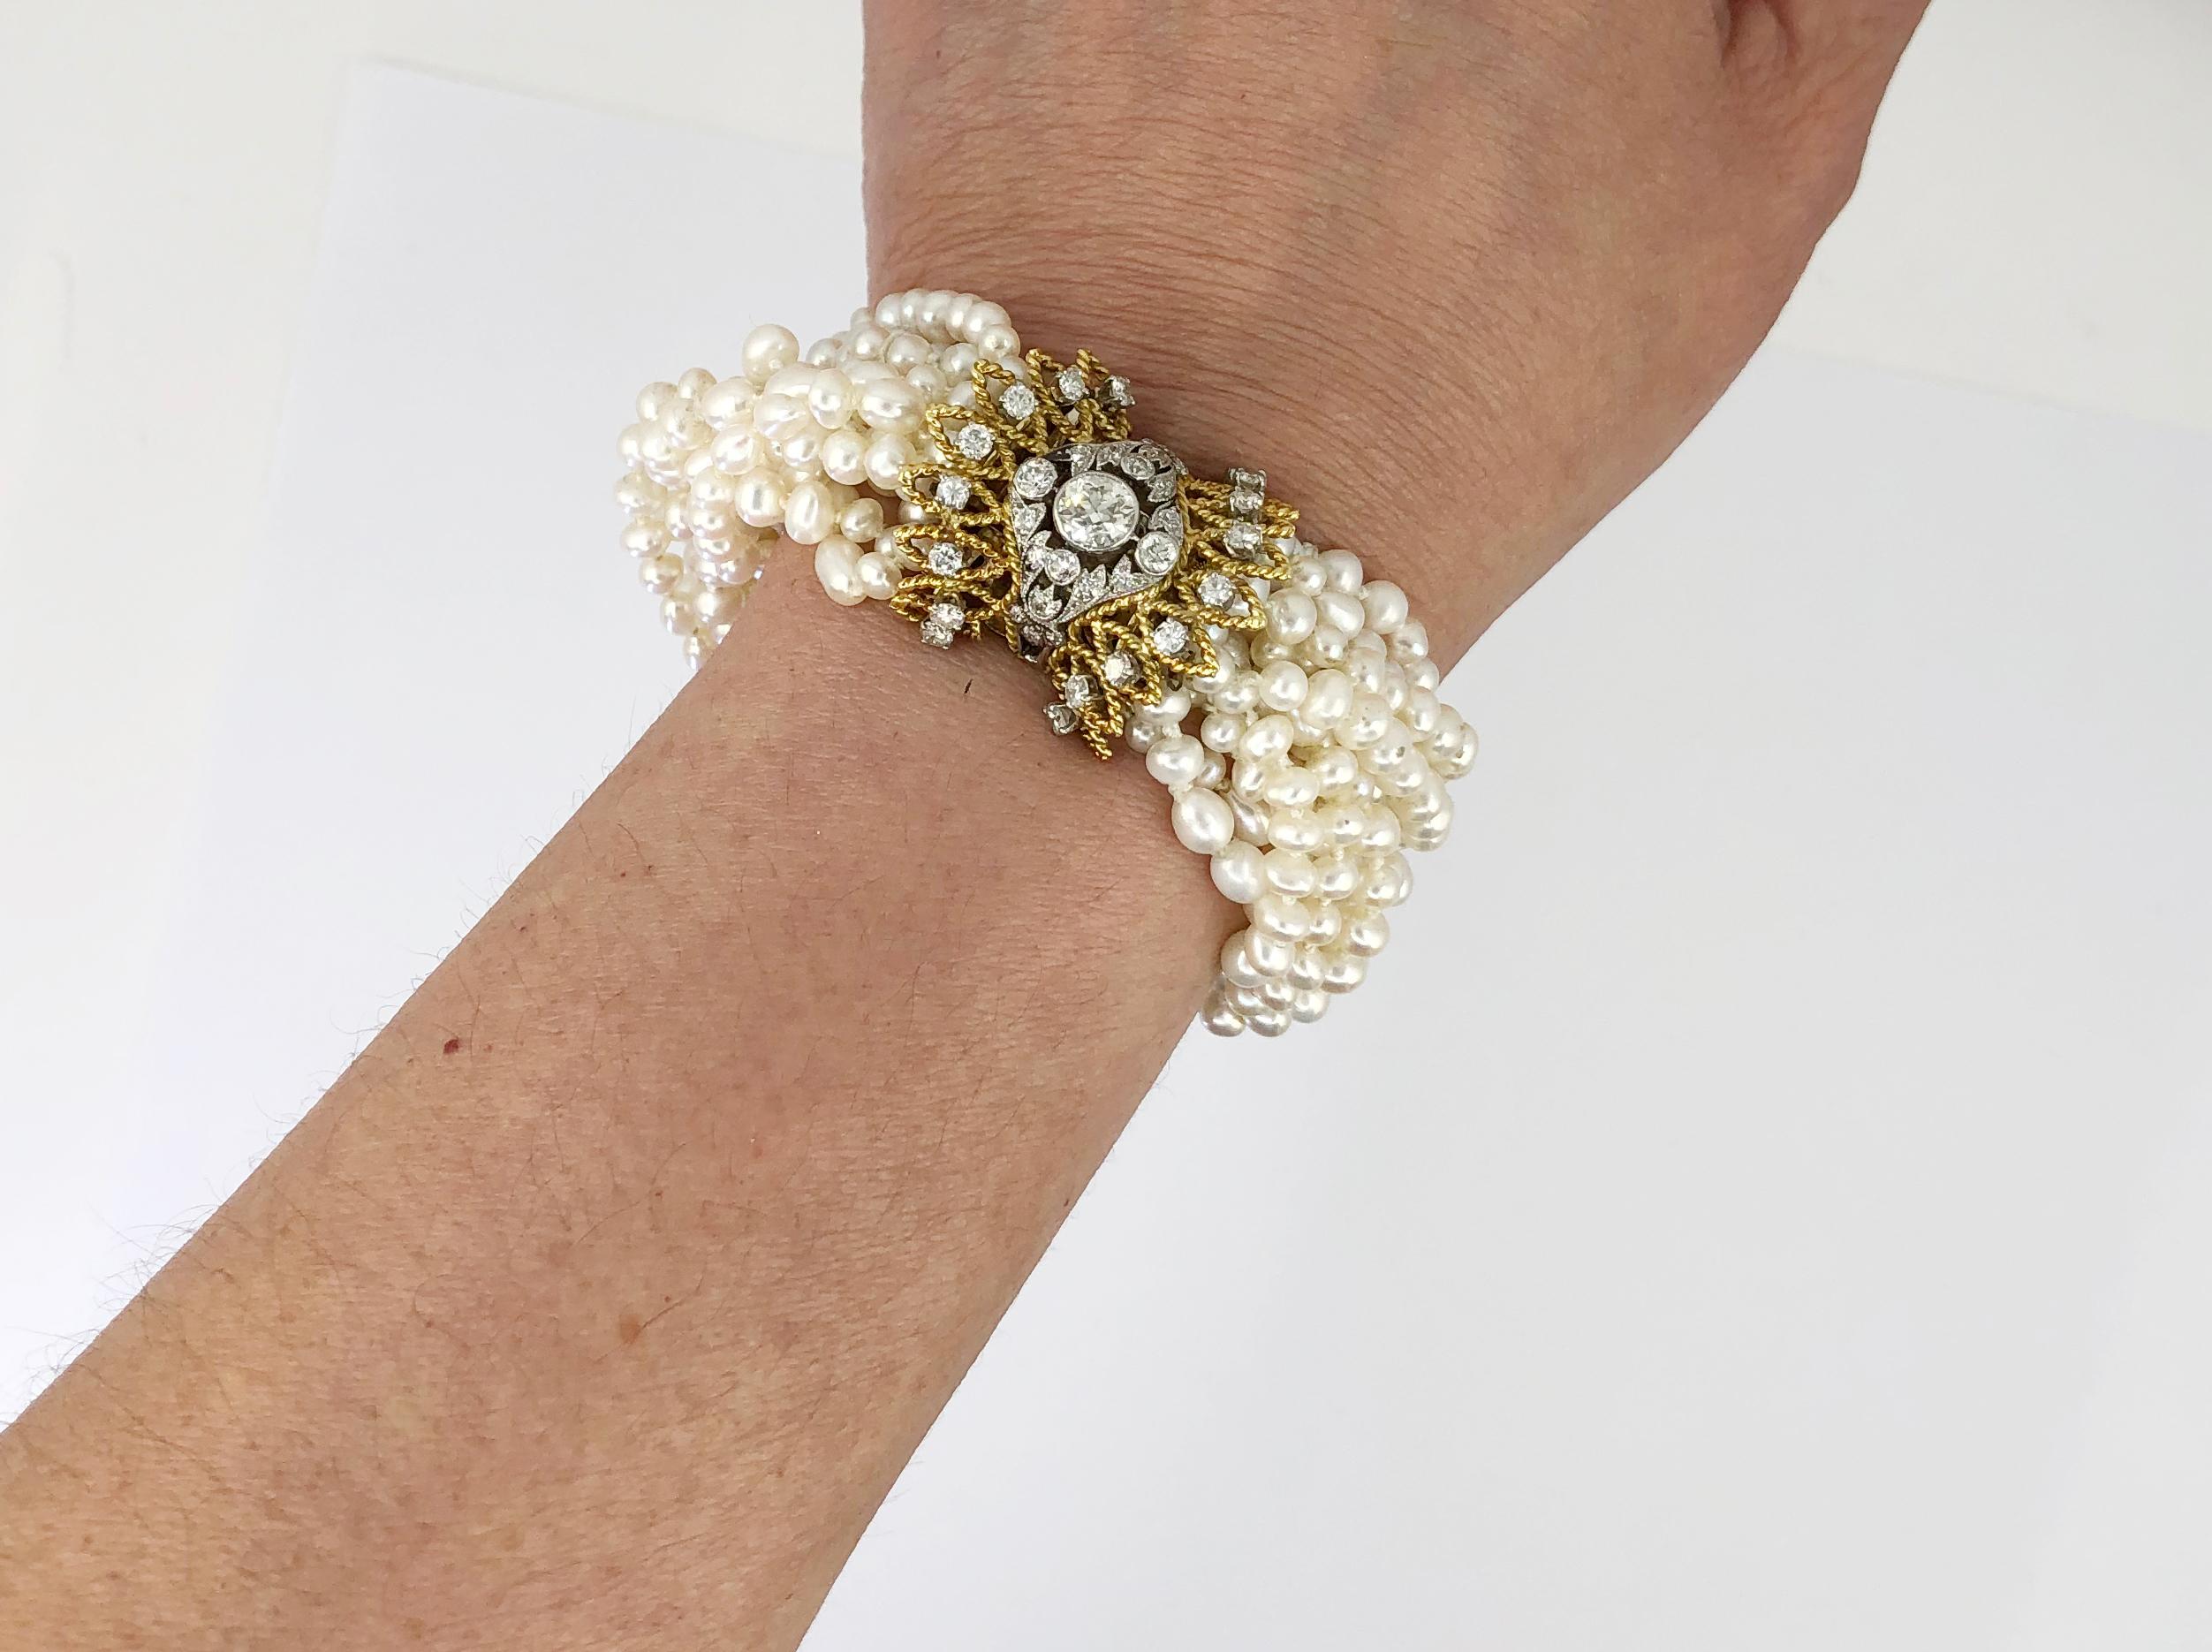 Zwei-Ton-Gold Diamant und alle natürlichen Perle Armband. Ca. 1970er Jahre.
Maße: ca. 6,75